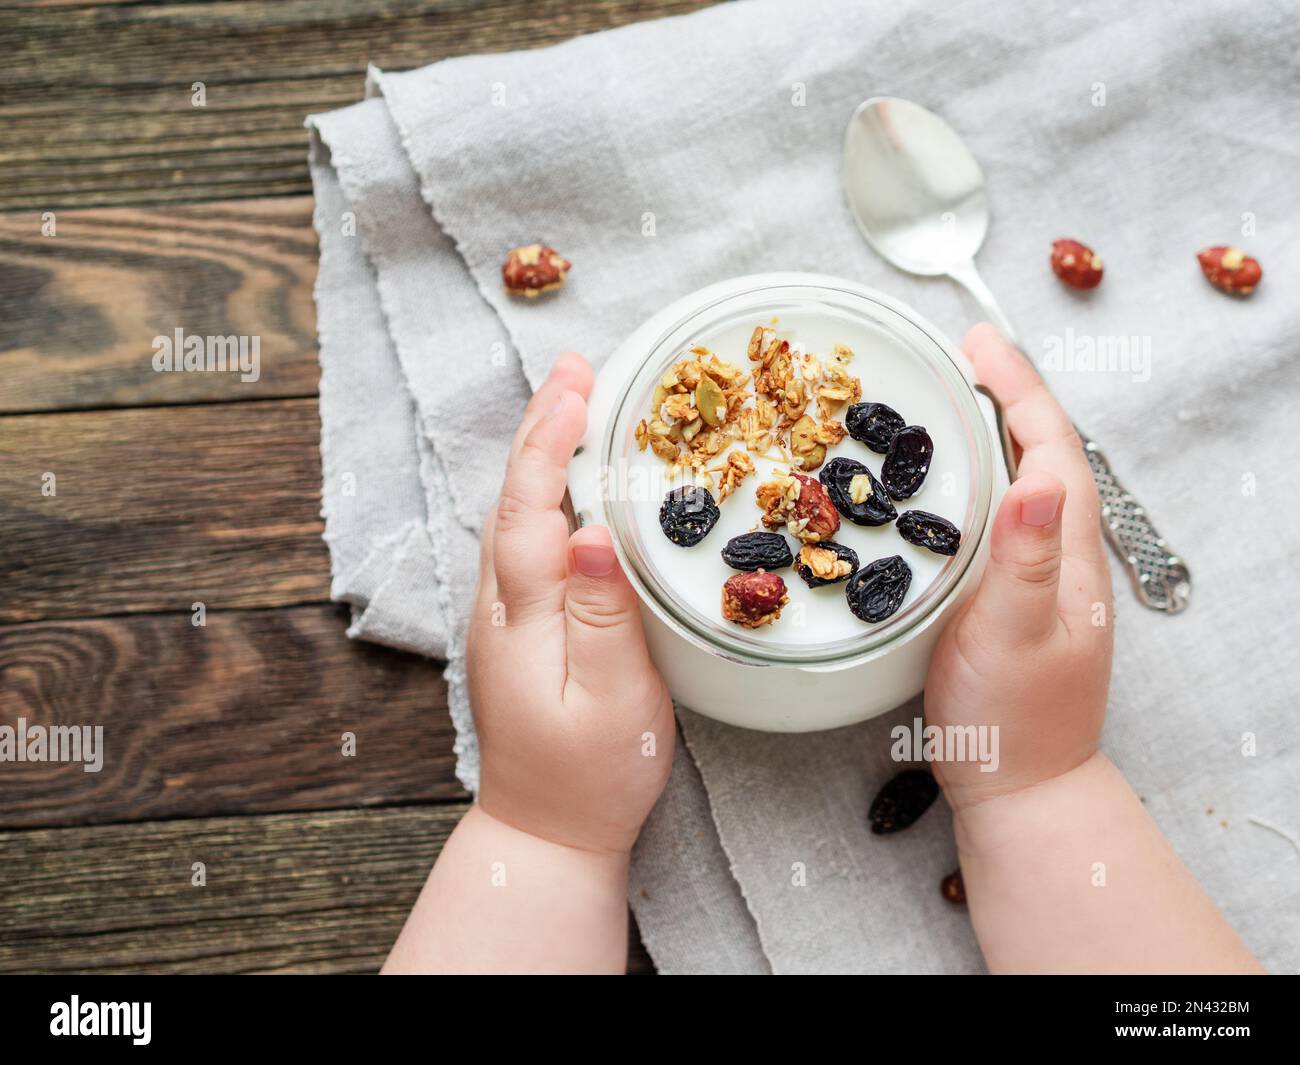 Yogurt naturale fatto in casa in un vasetto di vetro. Cibo sano per la colazione nelle mani dei bambini. Vasetto con muesli su tovaglia di lino su tovaglia di legno Foto Stock